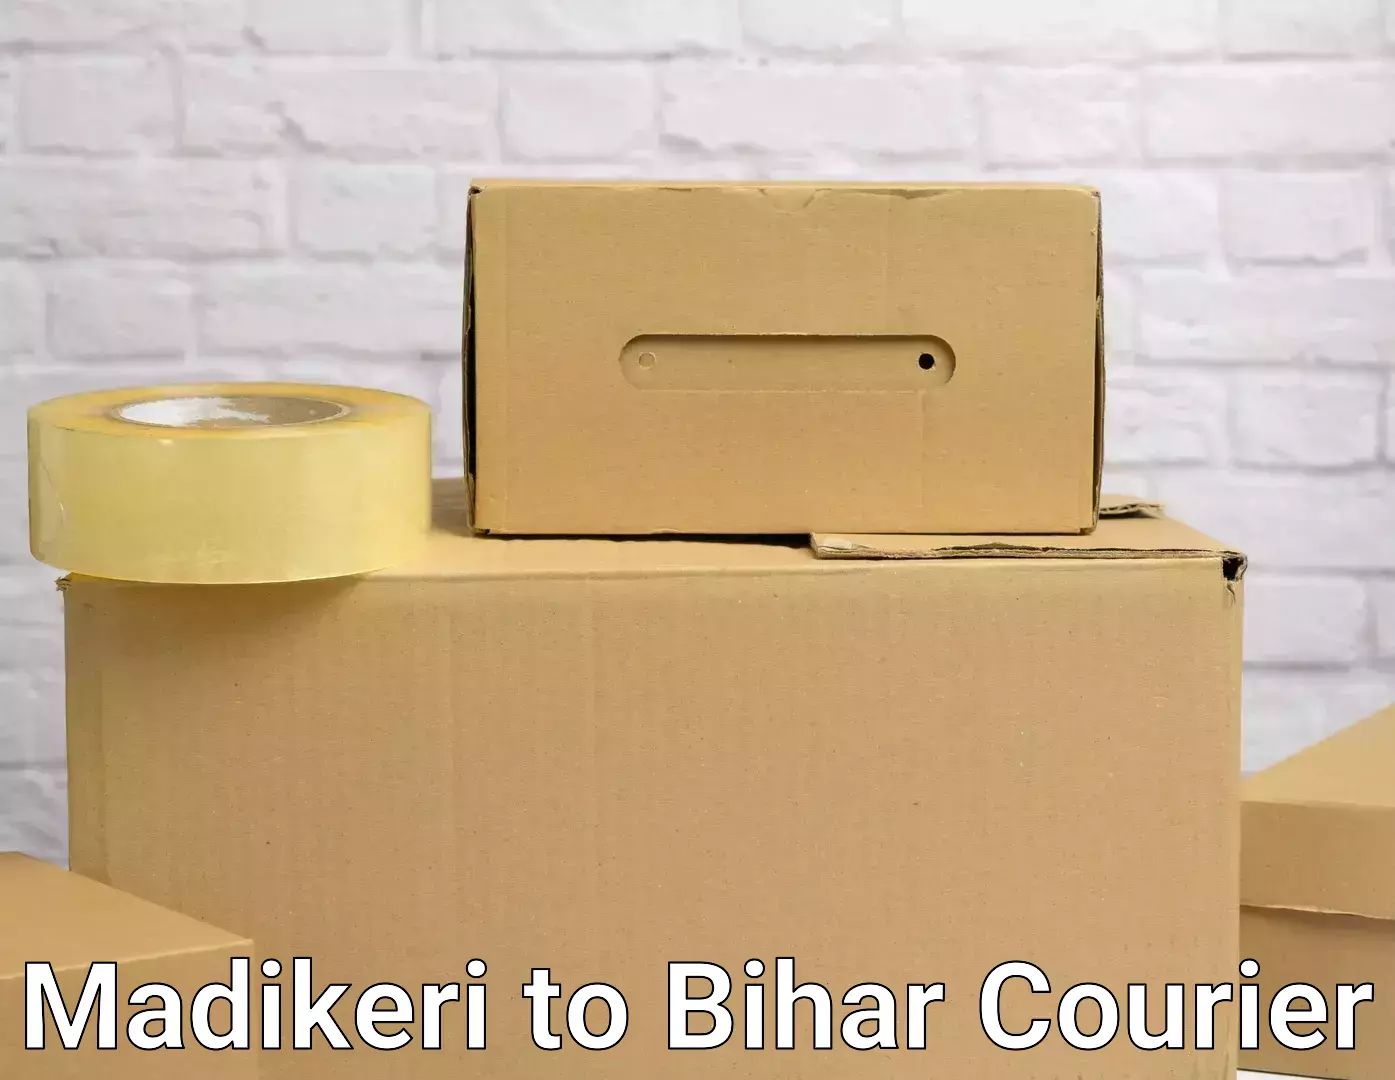 Furniture moving service Madikeri to Bihar